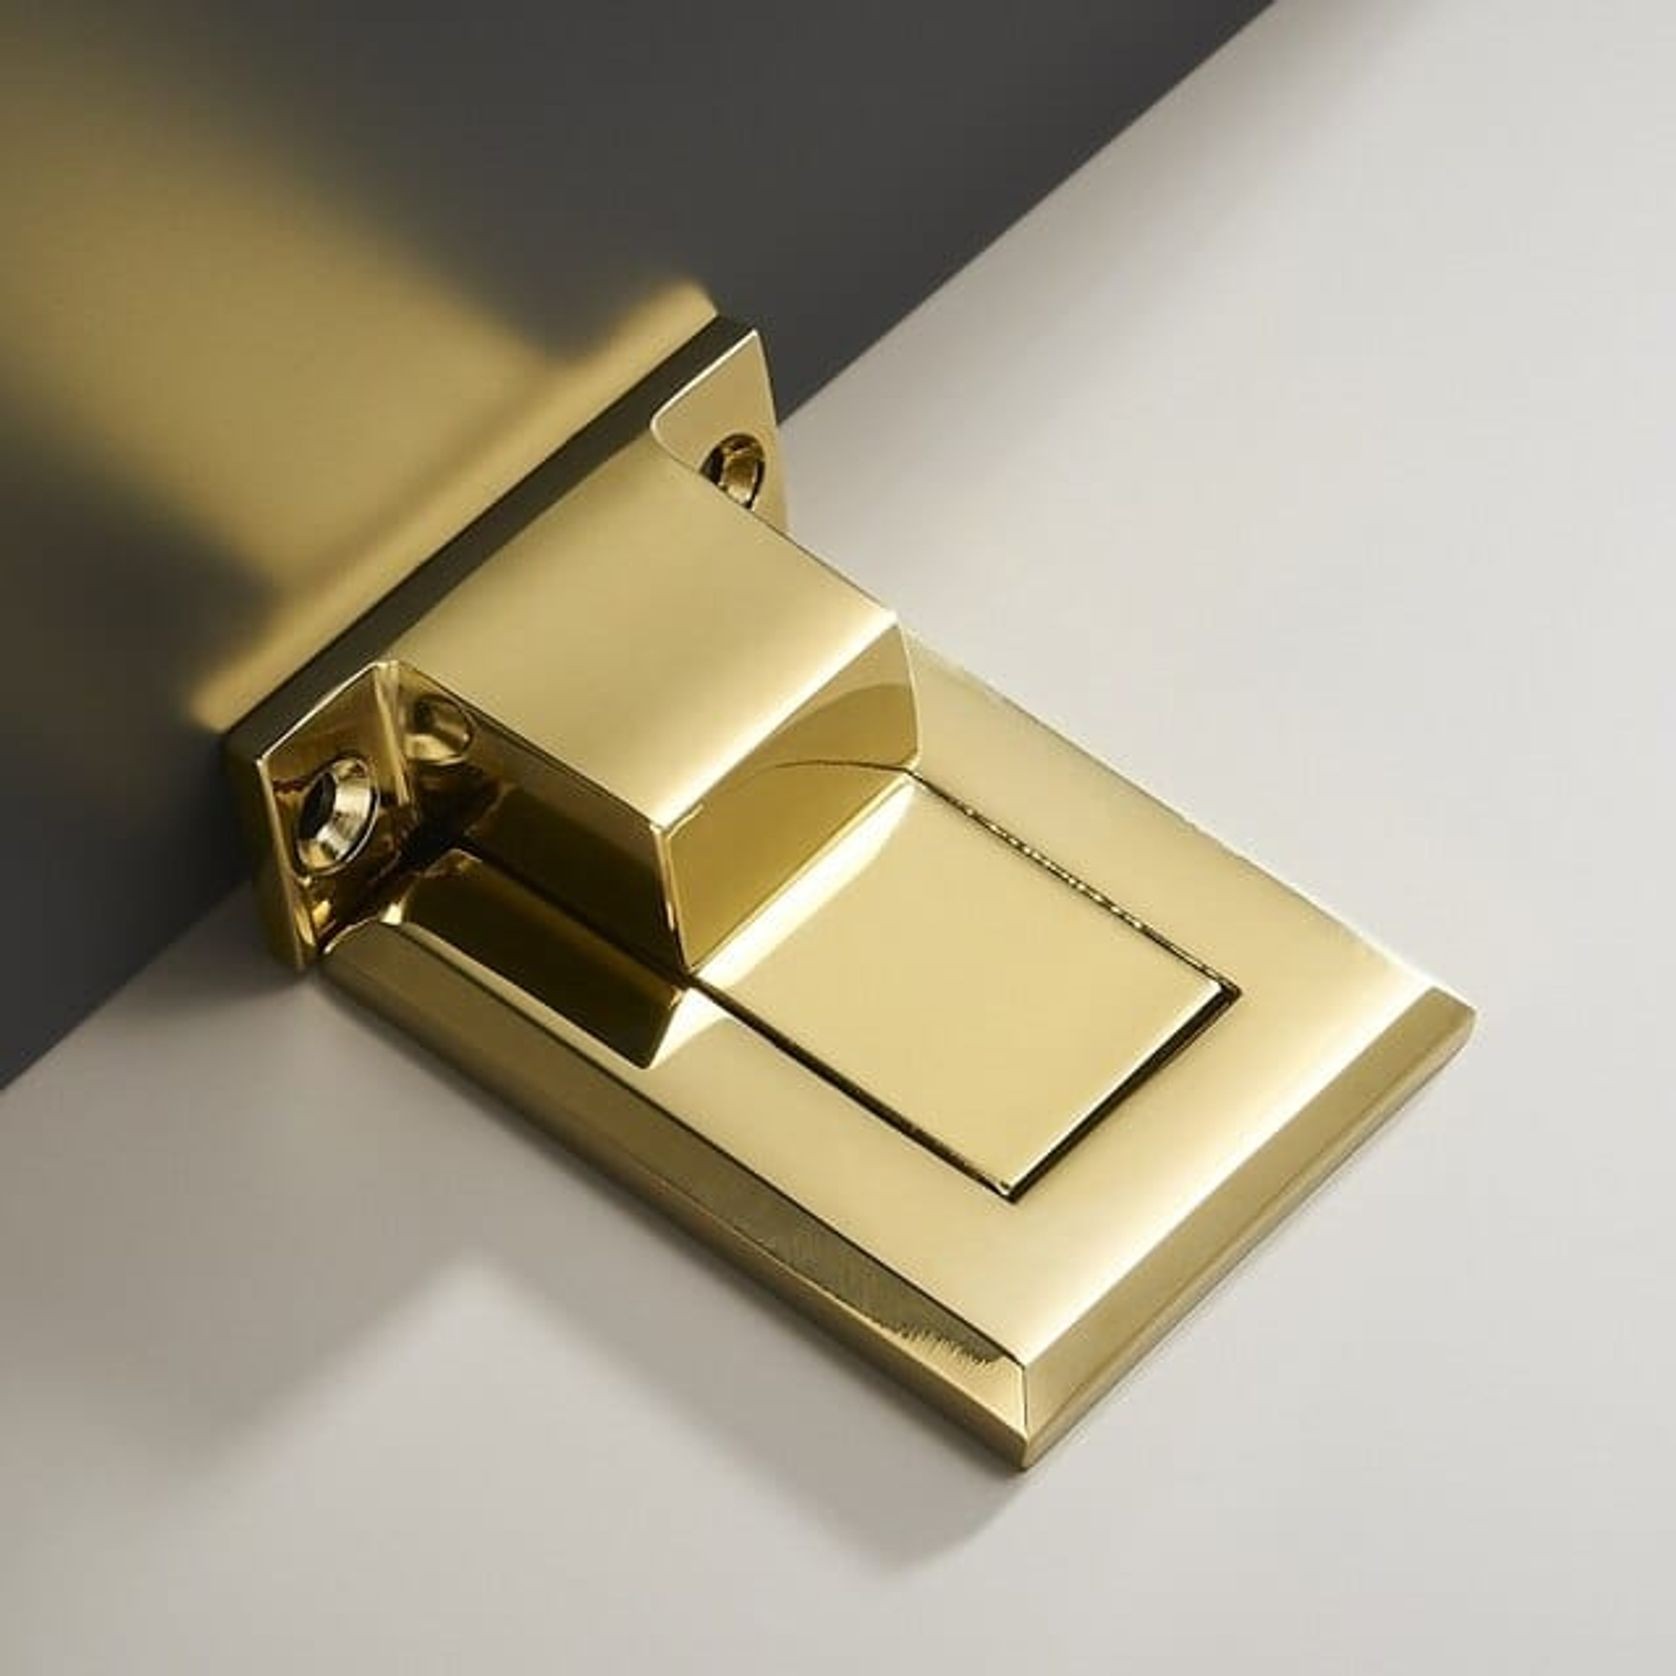 Luxe Doorware - Malvern Flush Magnetic Door Stop - Antique Brass with Gold Edging gallery detail image